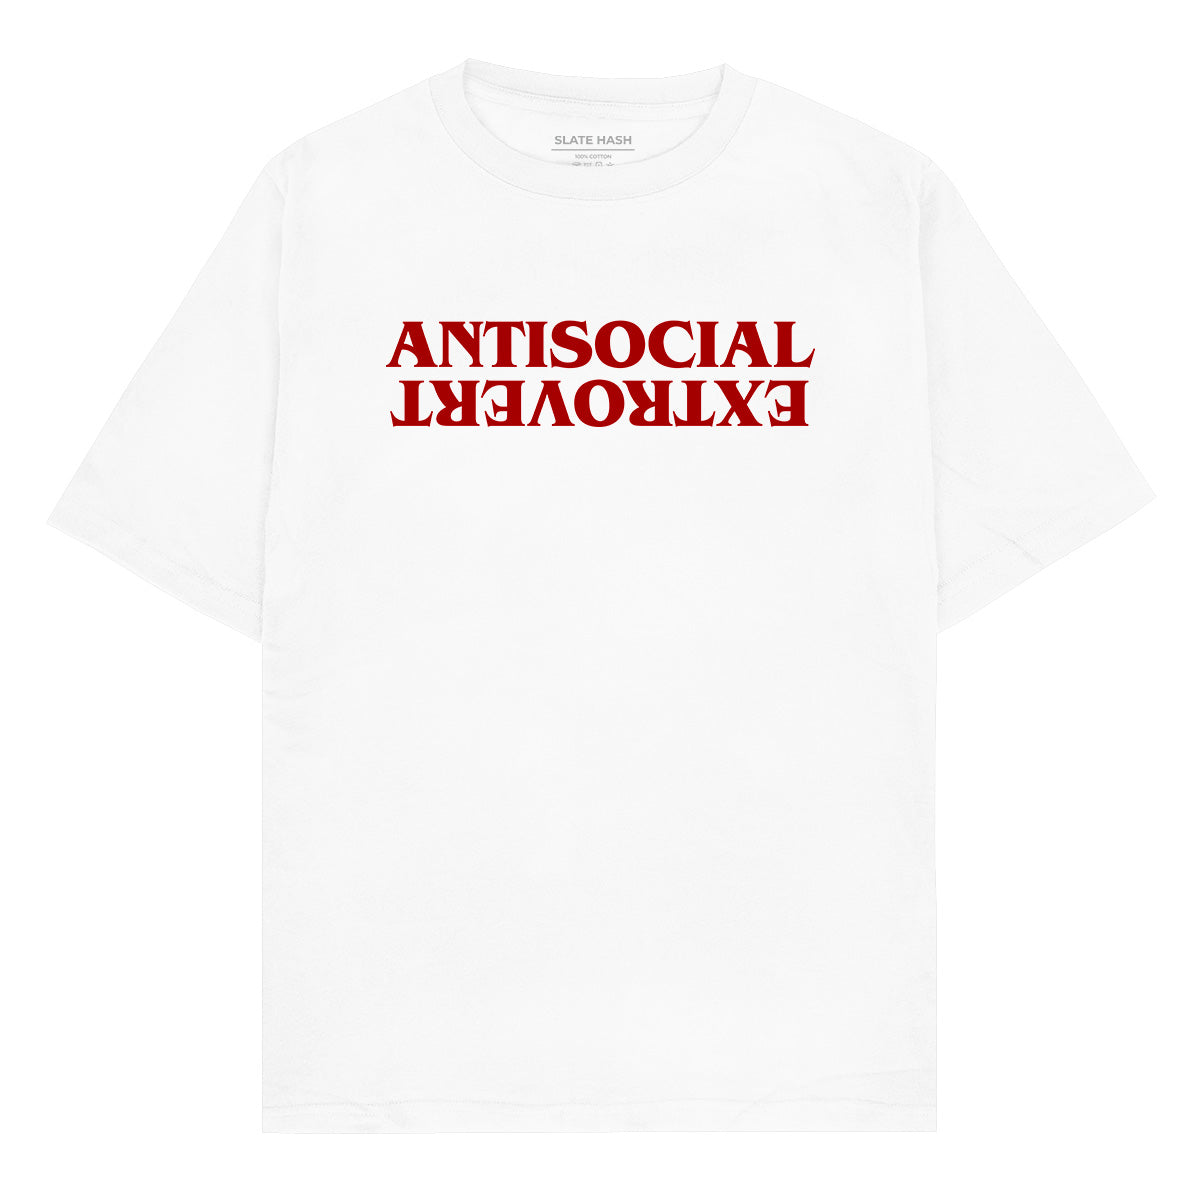 Antisocial Extrovert Oversized T-shirt